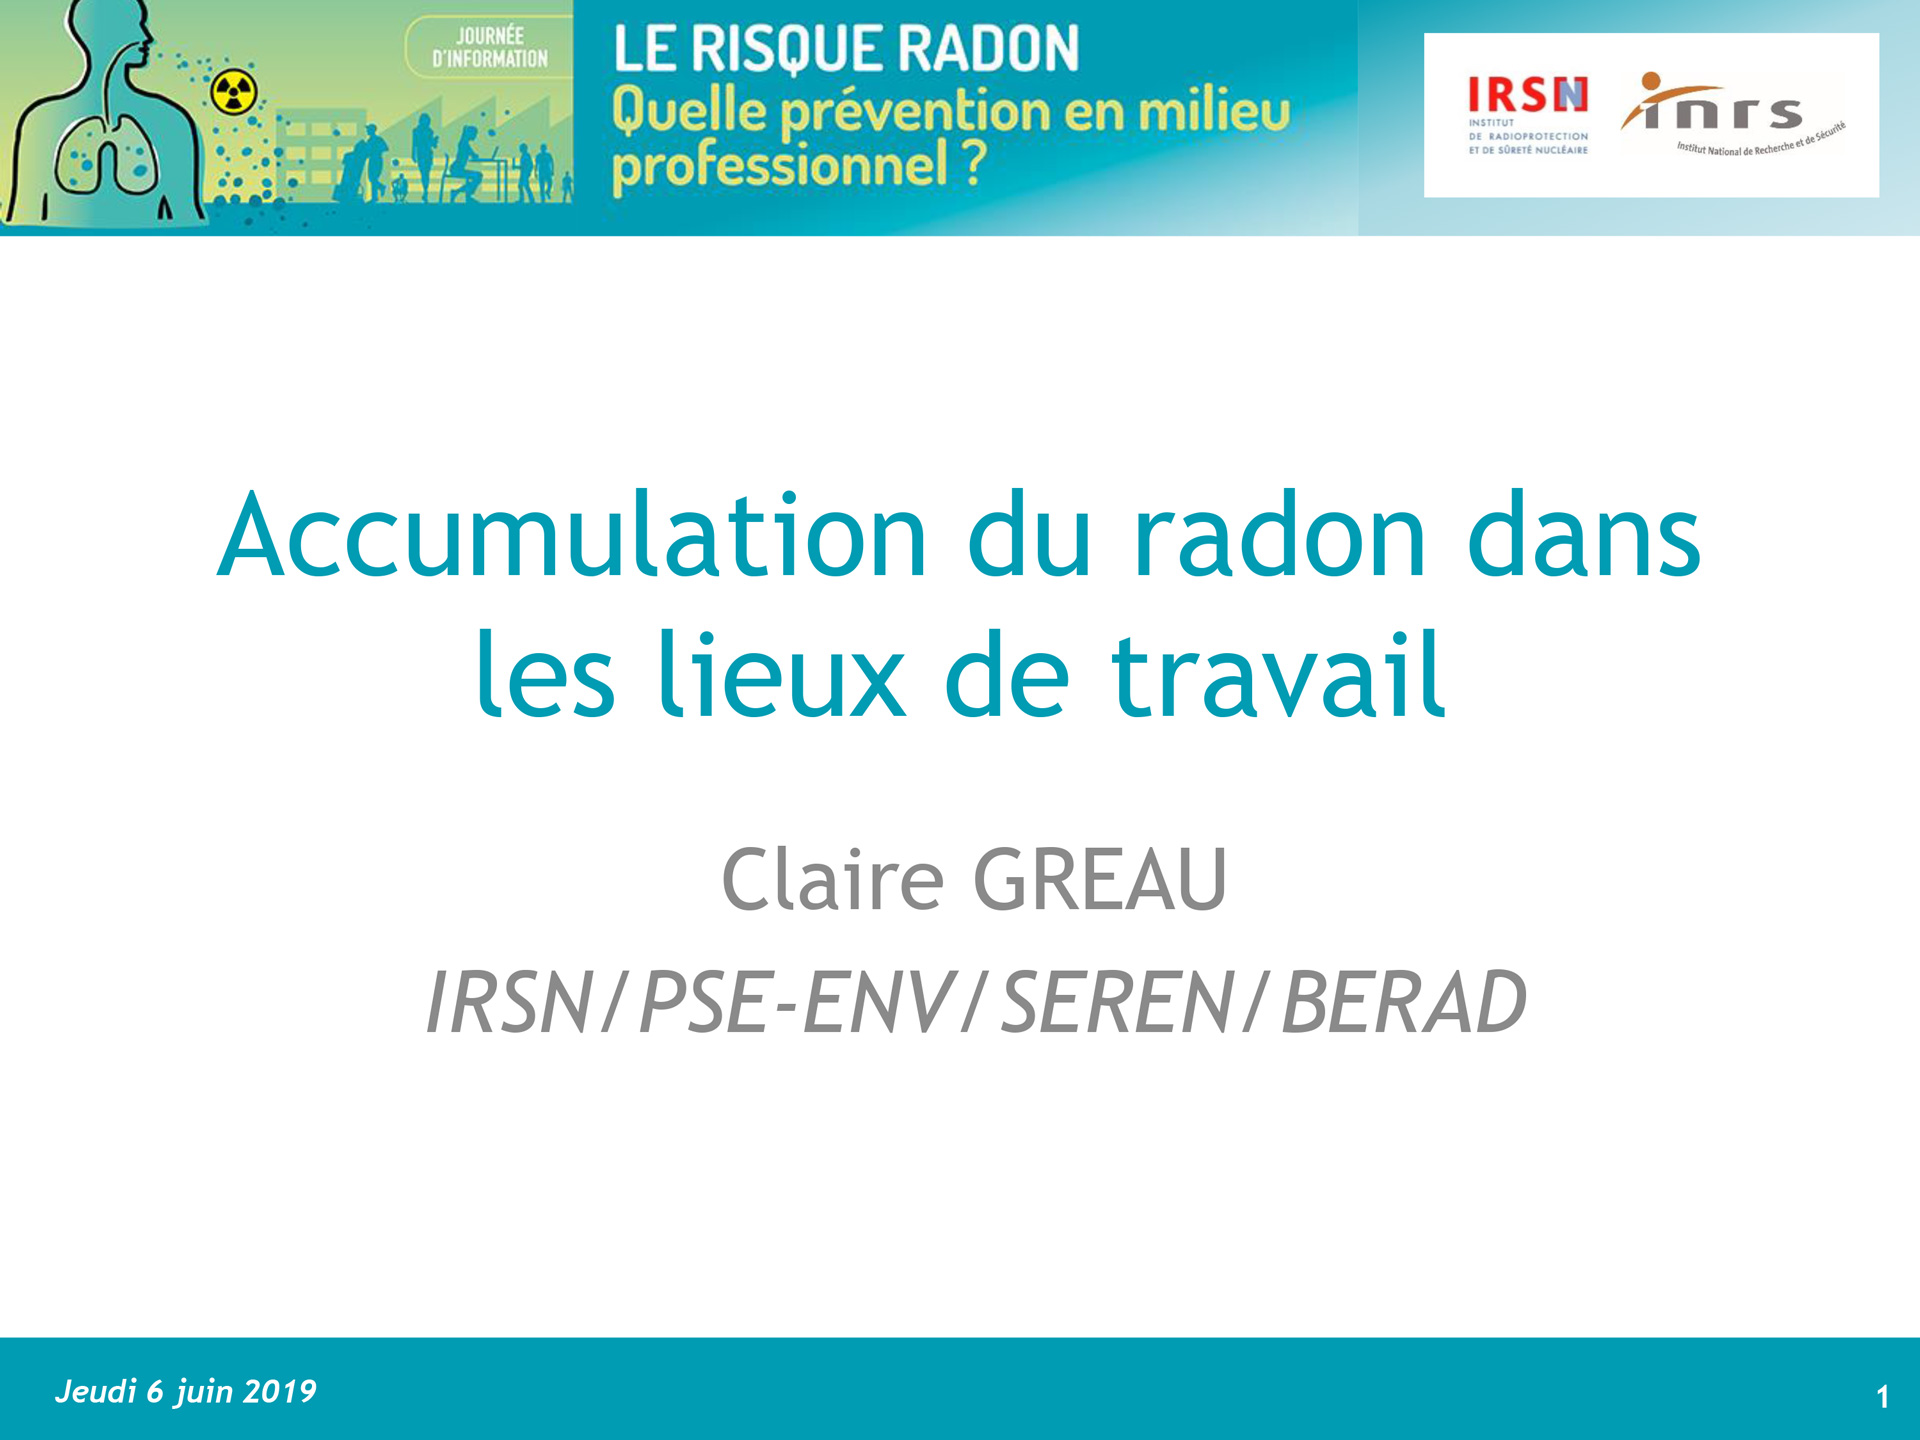 Accumulation du radon par Claire GREAU, IRSN